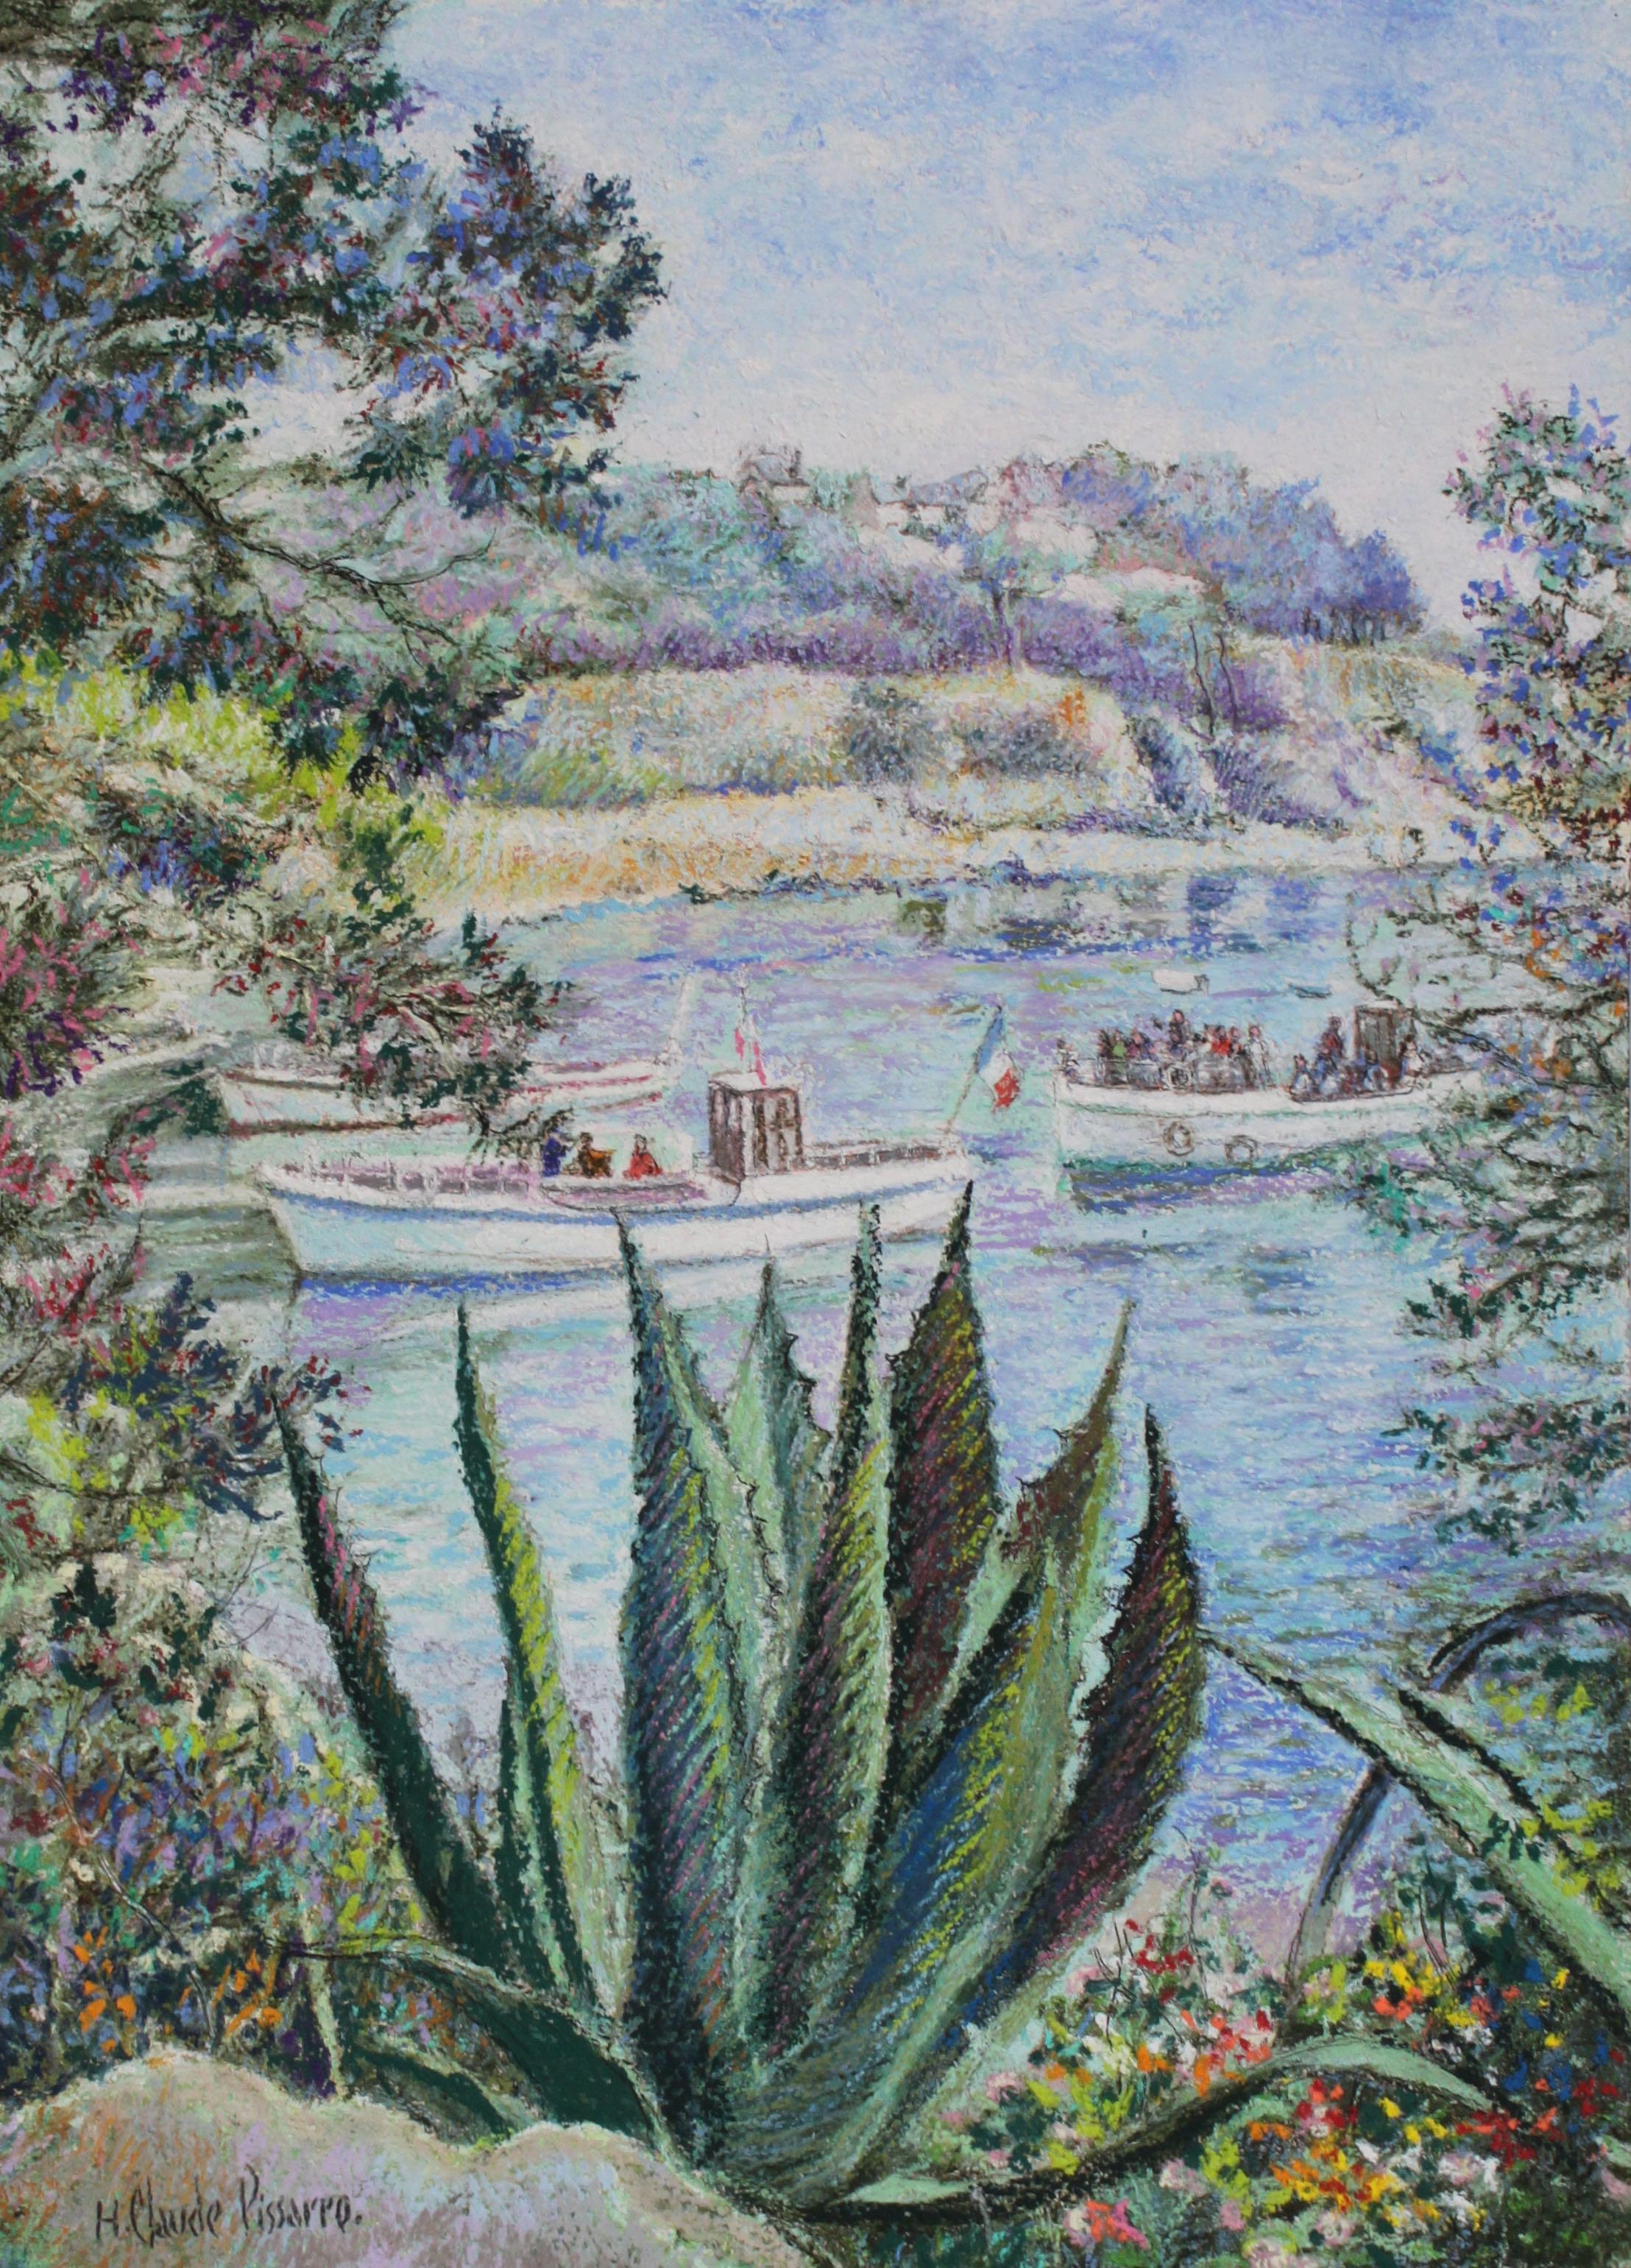 Hughes Claude Pissarro Landscape Art – L'Aloés de la Calanque - Bréhat von H. Claude Pissarro - Landschaftsmalerei